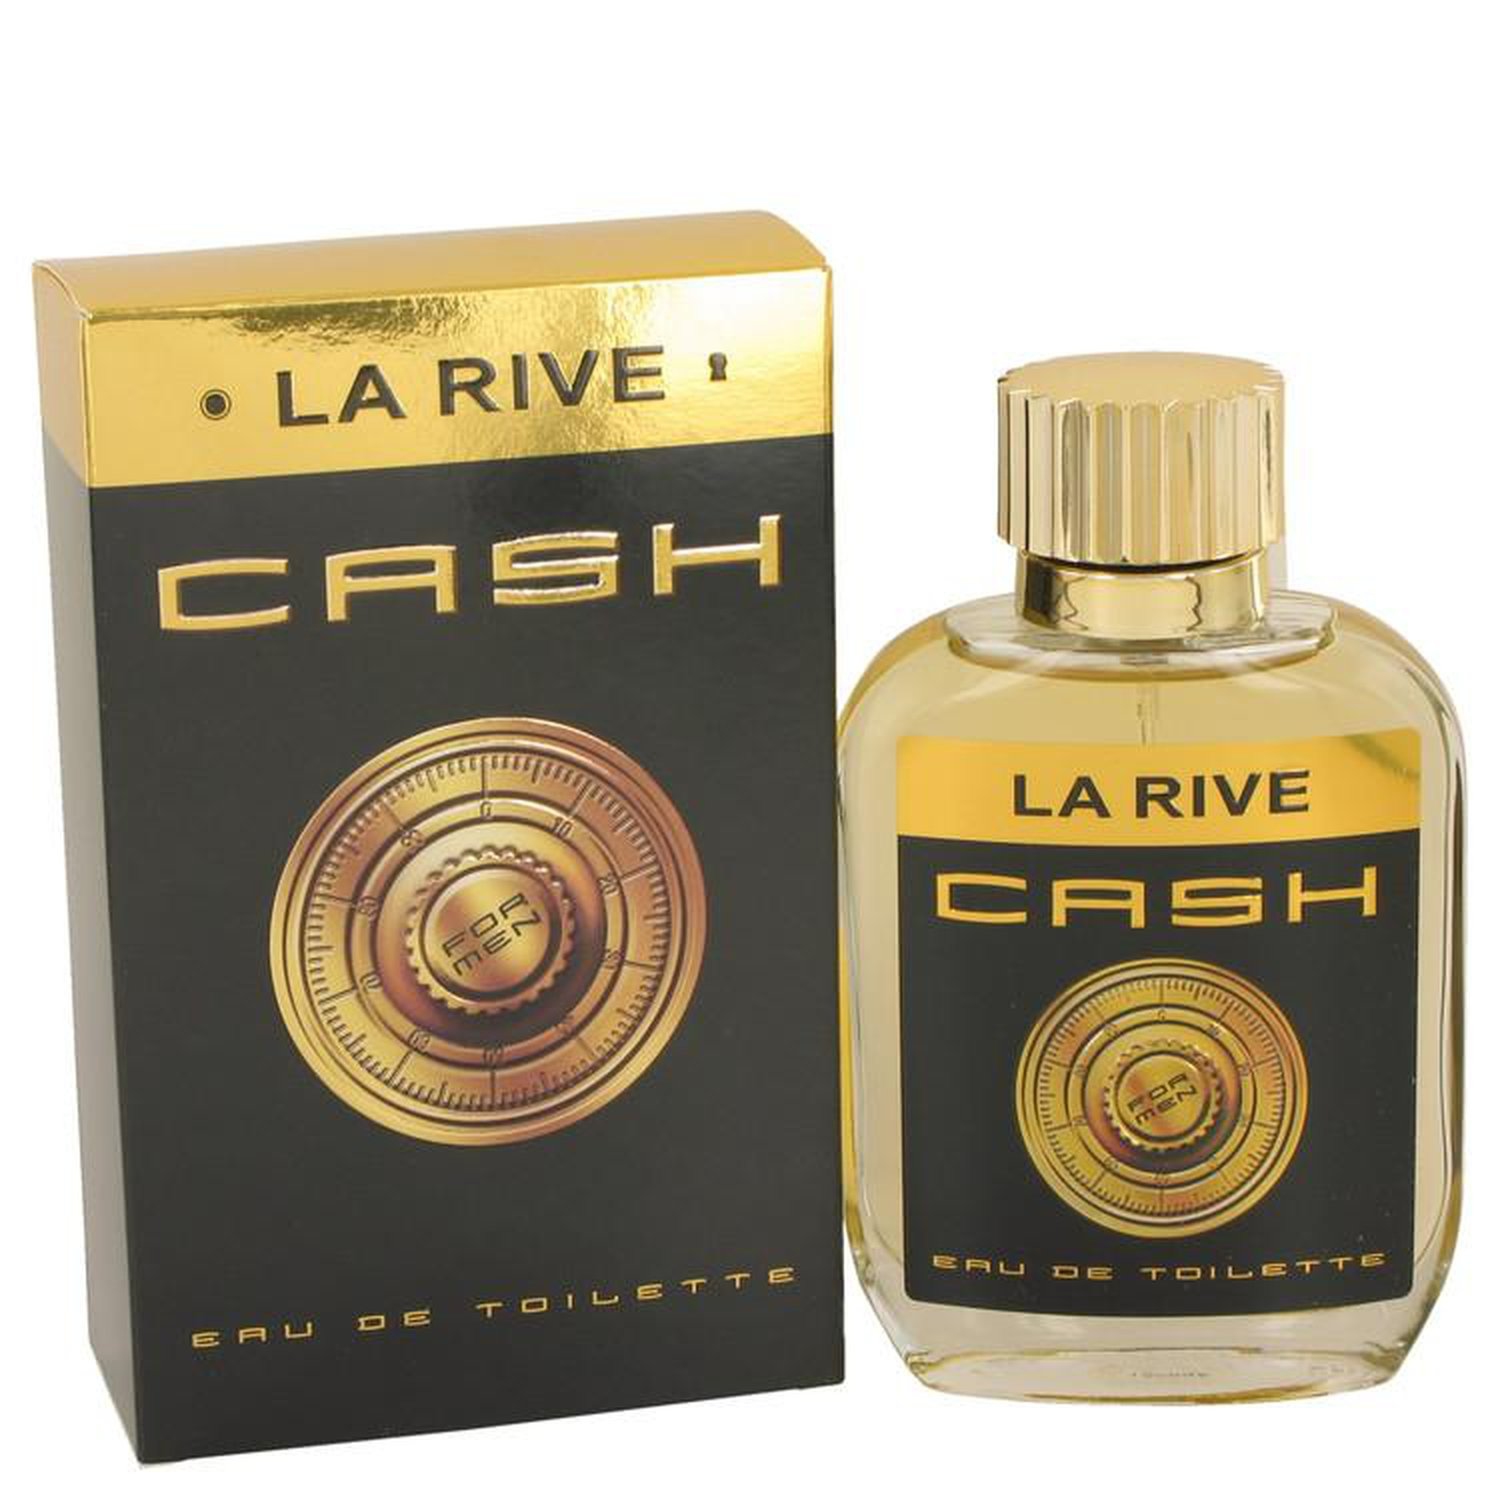 La Rive Cash by La Rive Eau De Toilette Spray 3.3 oz (100 ml) (Men)